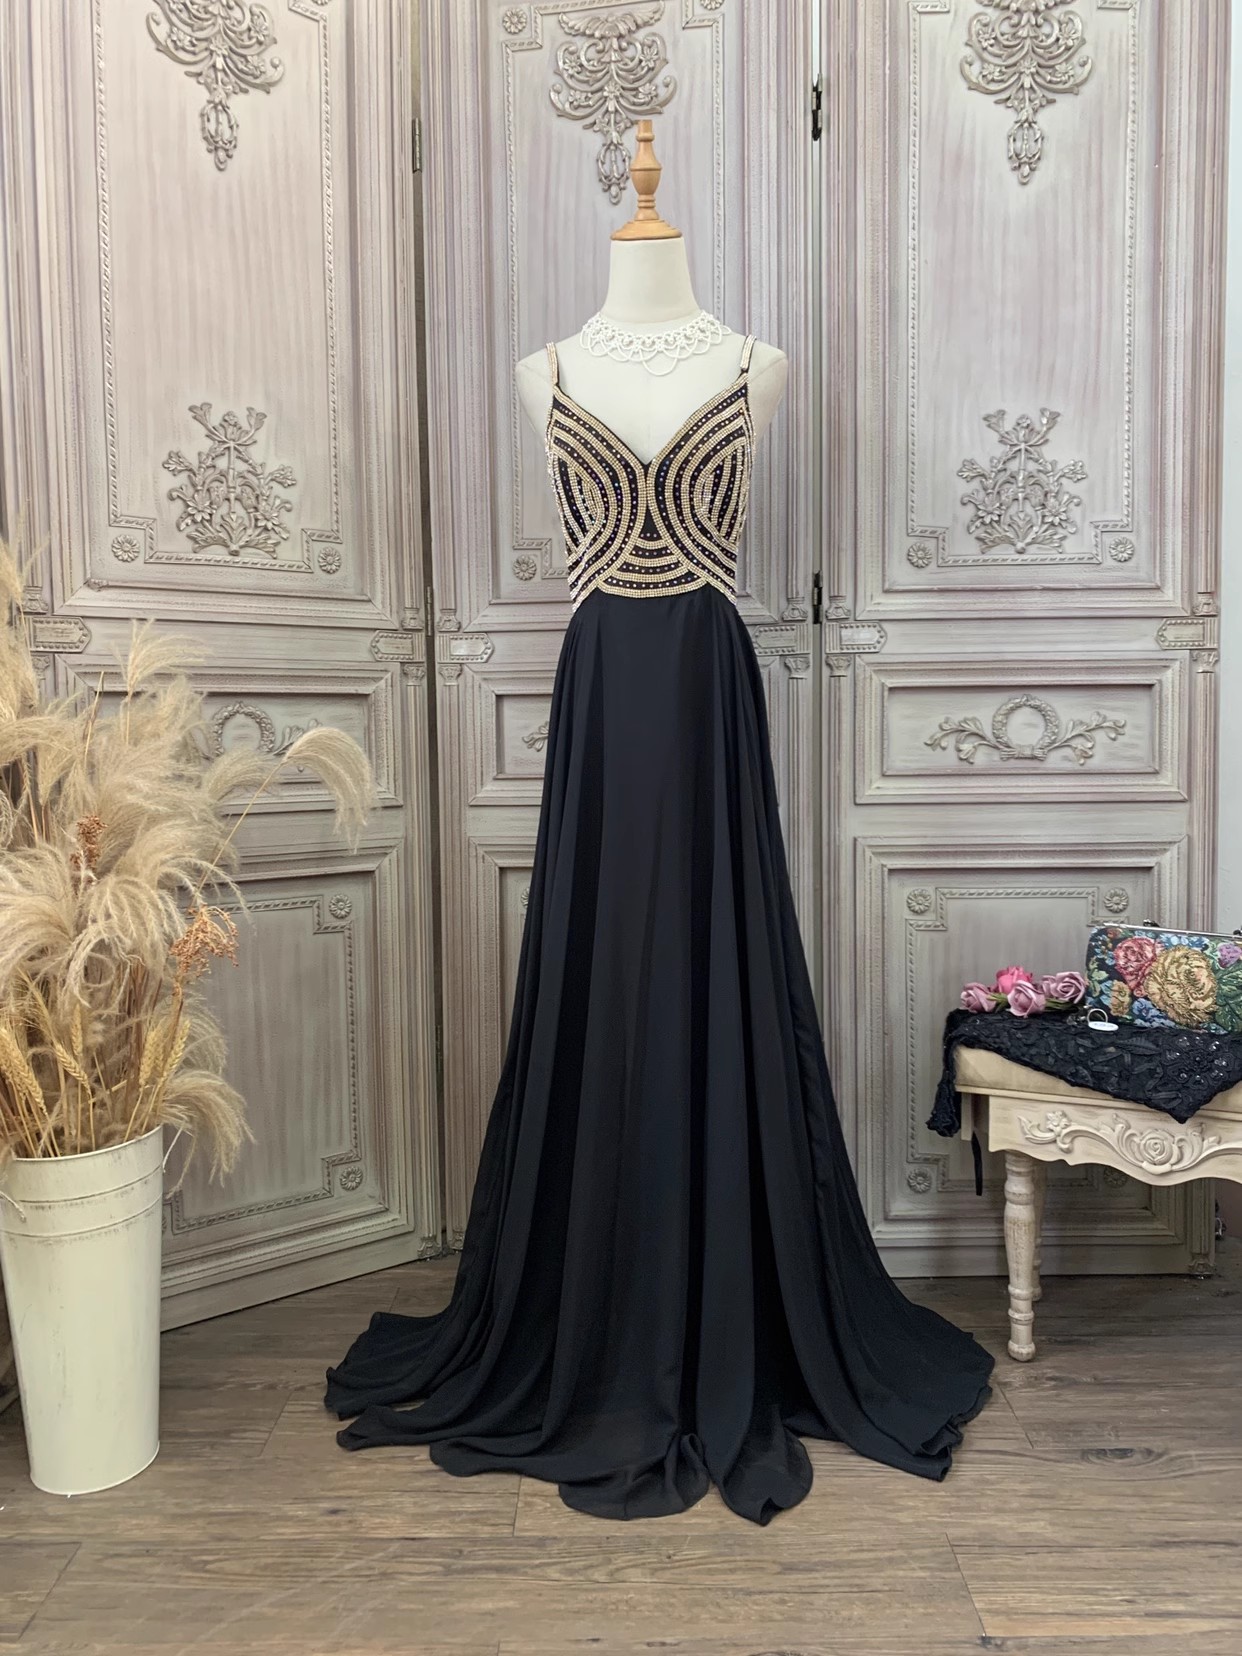 블랙 다이아몬드 중국 여성 드레스 메이커 공급 업체 (2)